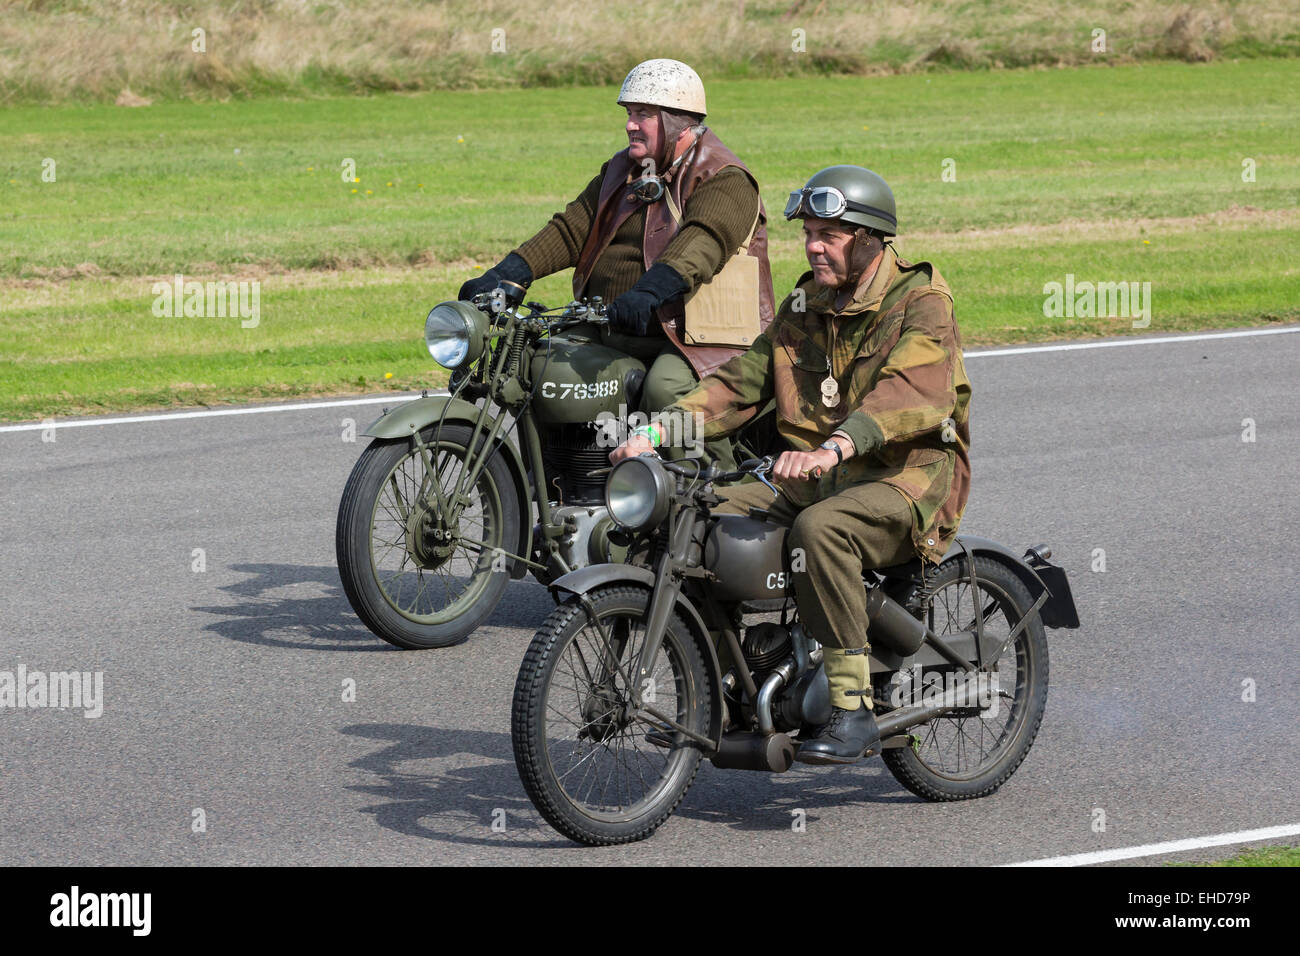 Deux motos et riders défilé en costume pour commémorer le 75e anniversaire du DAR Westhampnet, Goodwood Revival, Sussex, UK Banque D'Images